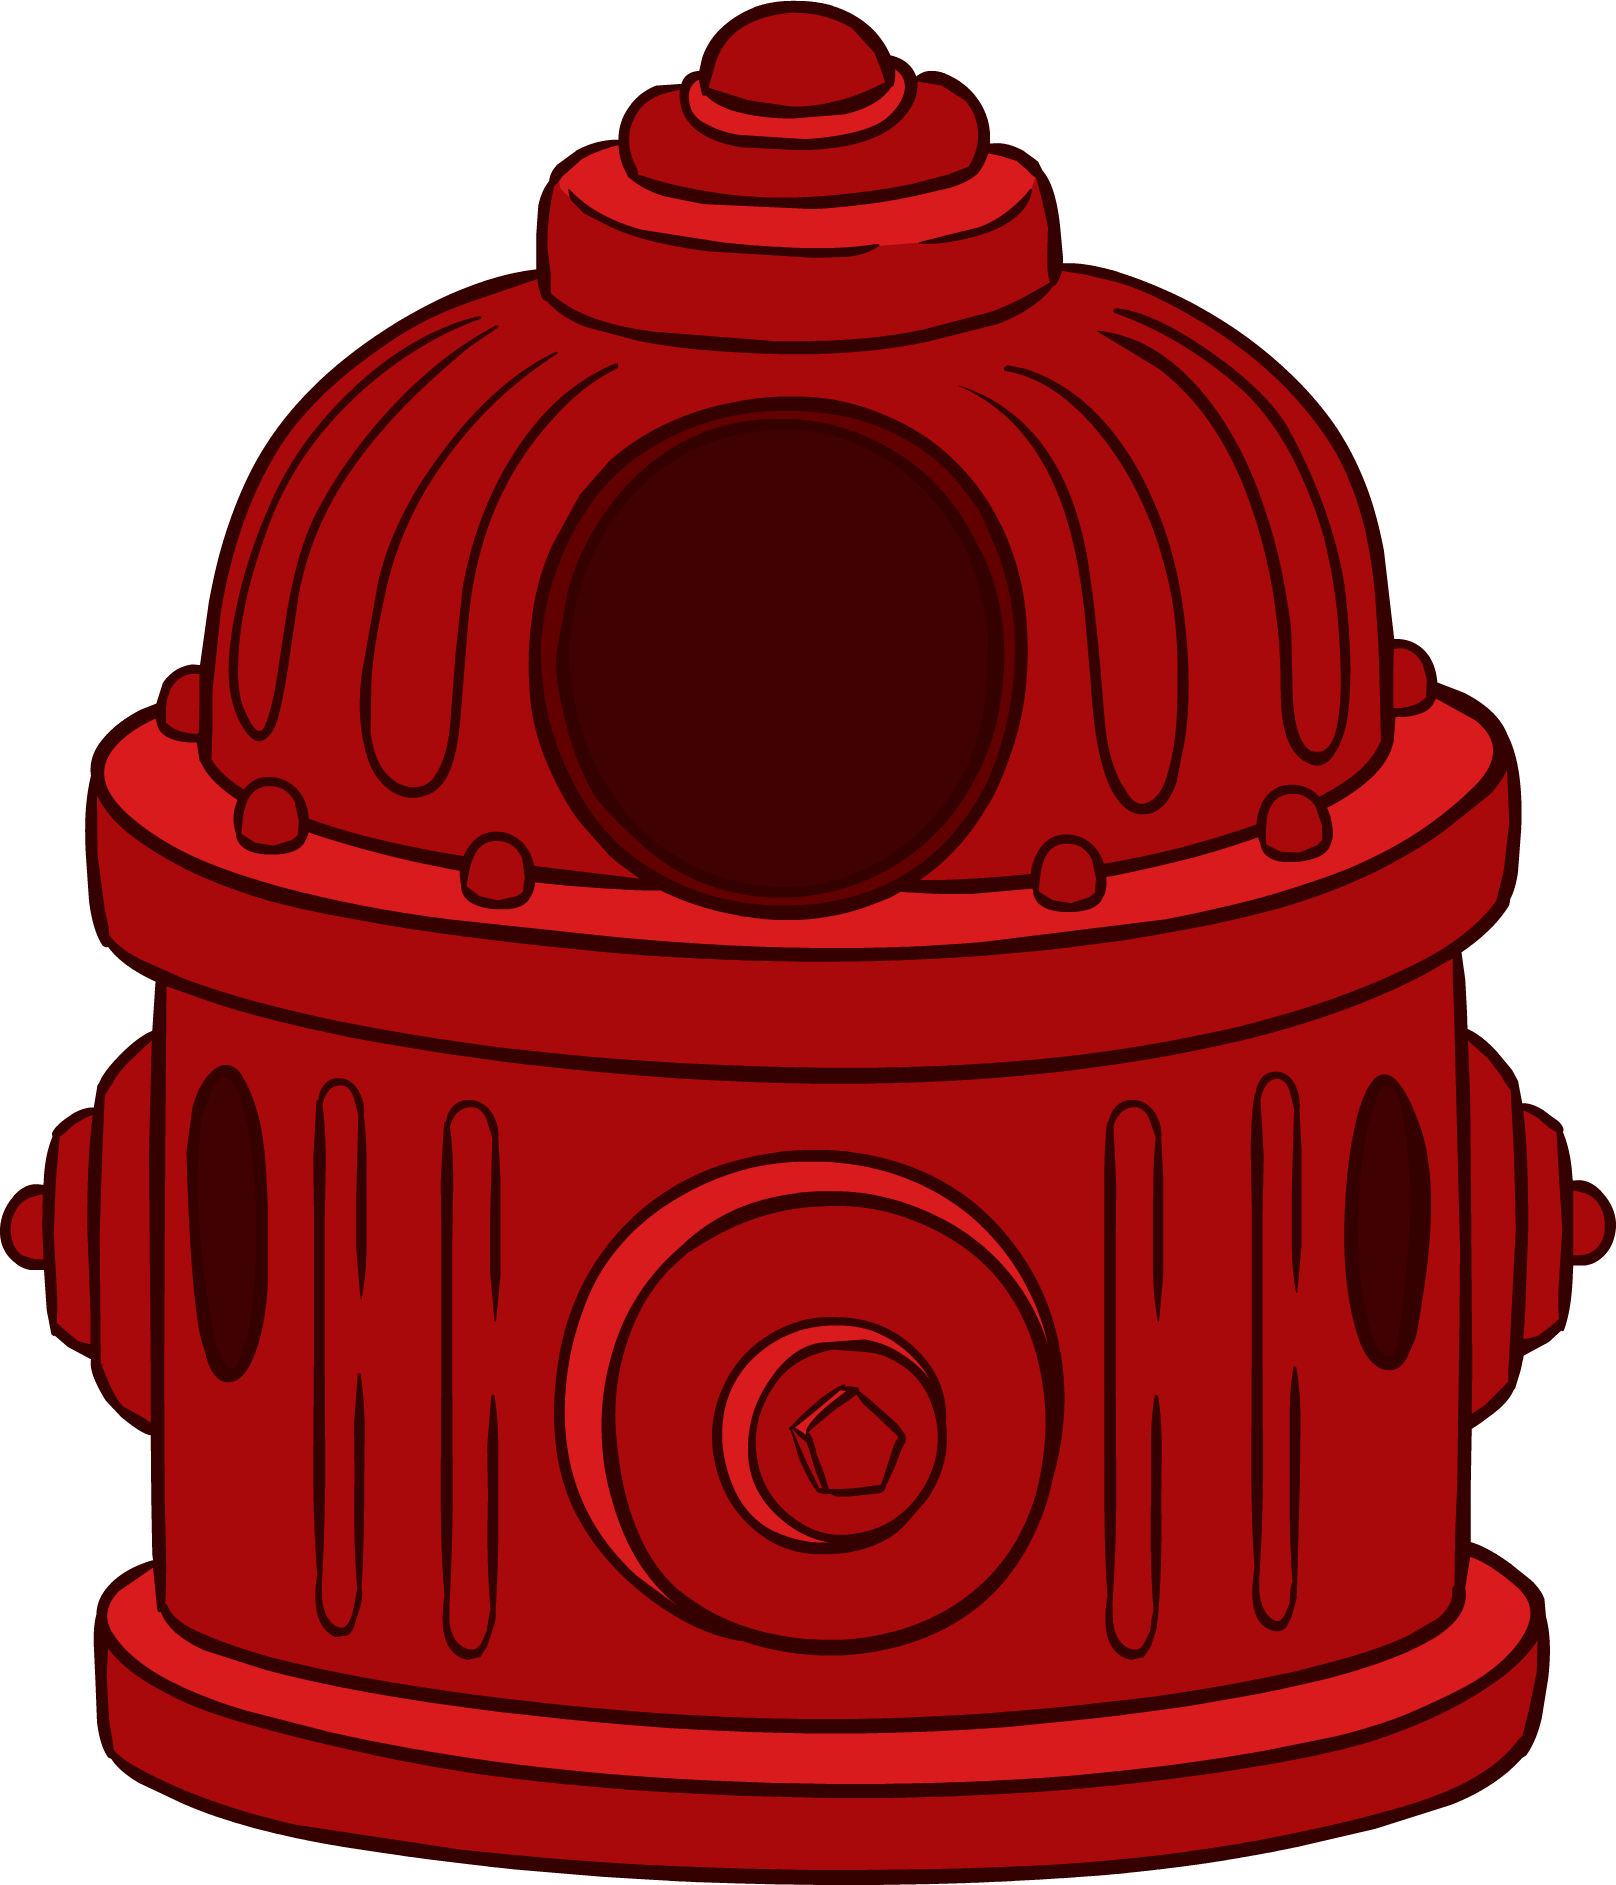 Fire Hydrant Costume - Fire Hydrant Costume (1616x1885)